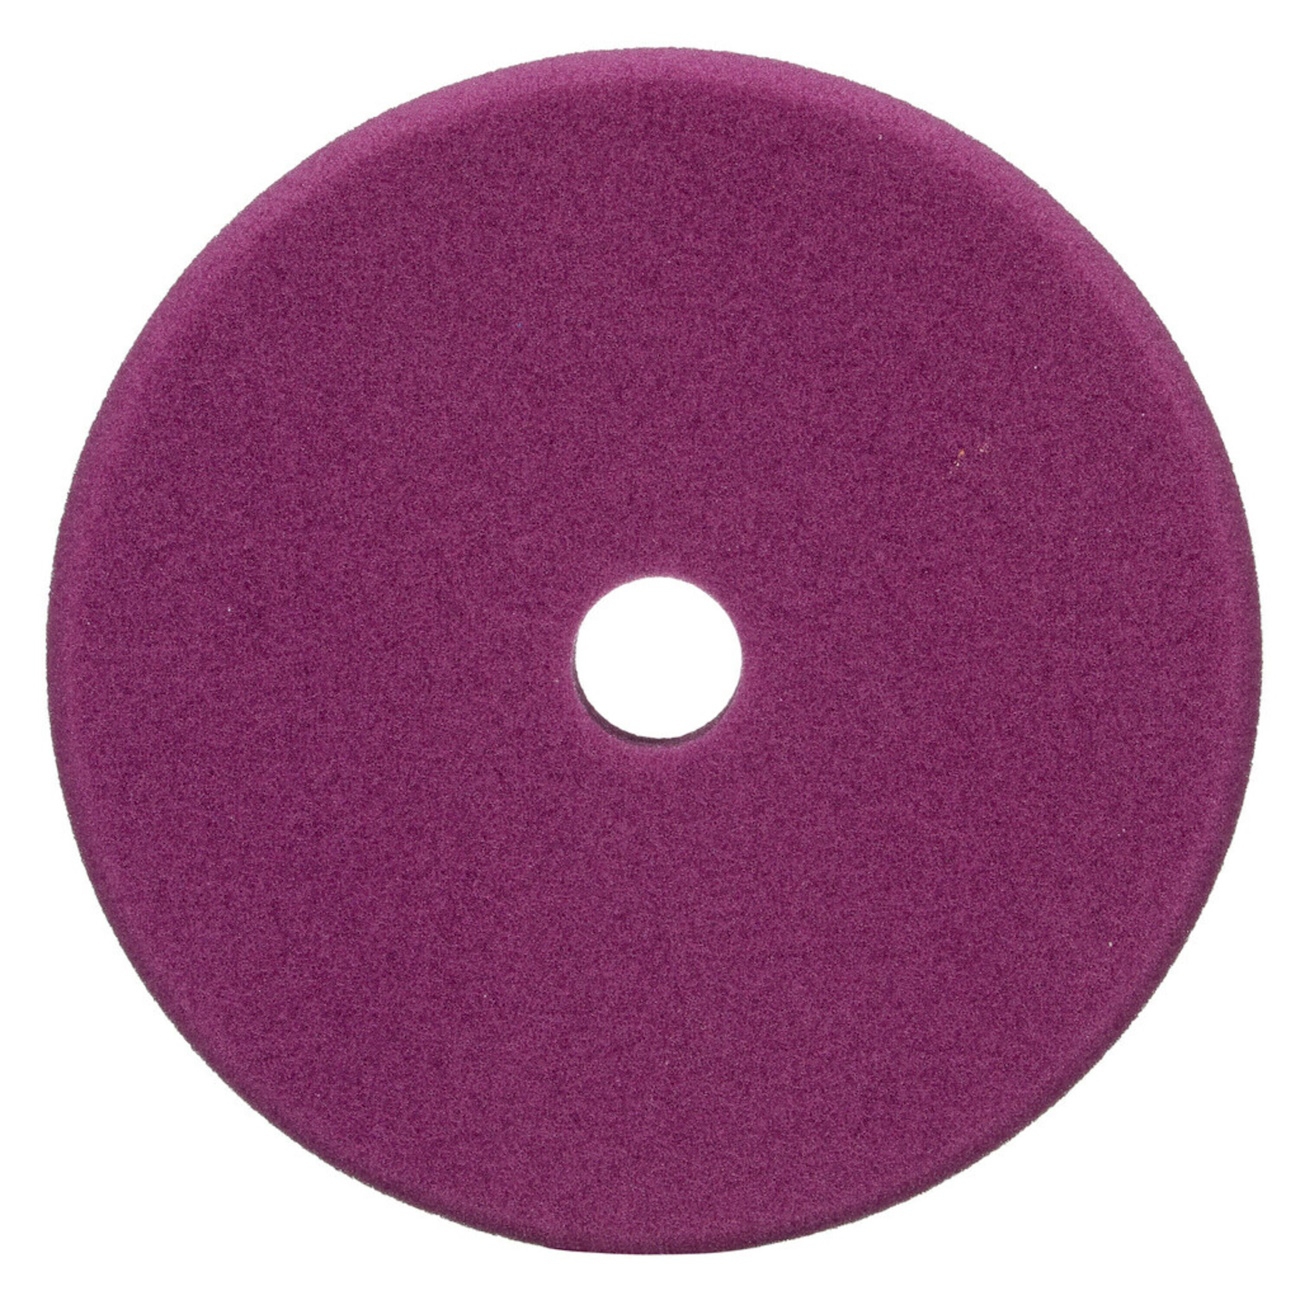 3M Perfect-it Feines Schaum-Polierpad für Exzenterpoliermaschine, violett, 150 mm, 34127 (Pack=2 Stück)